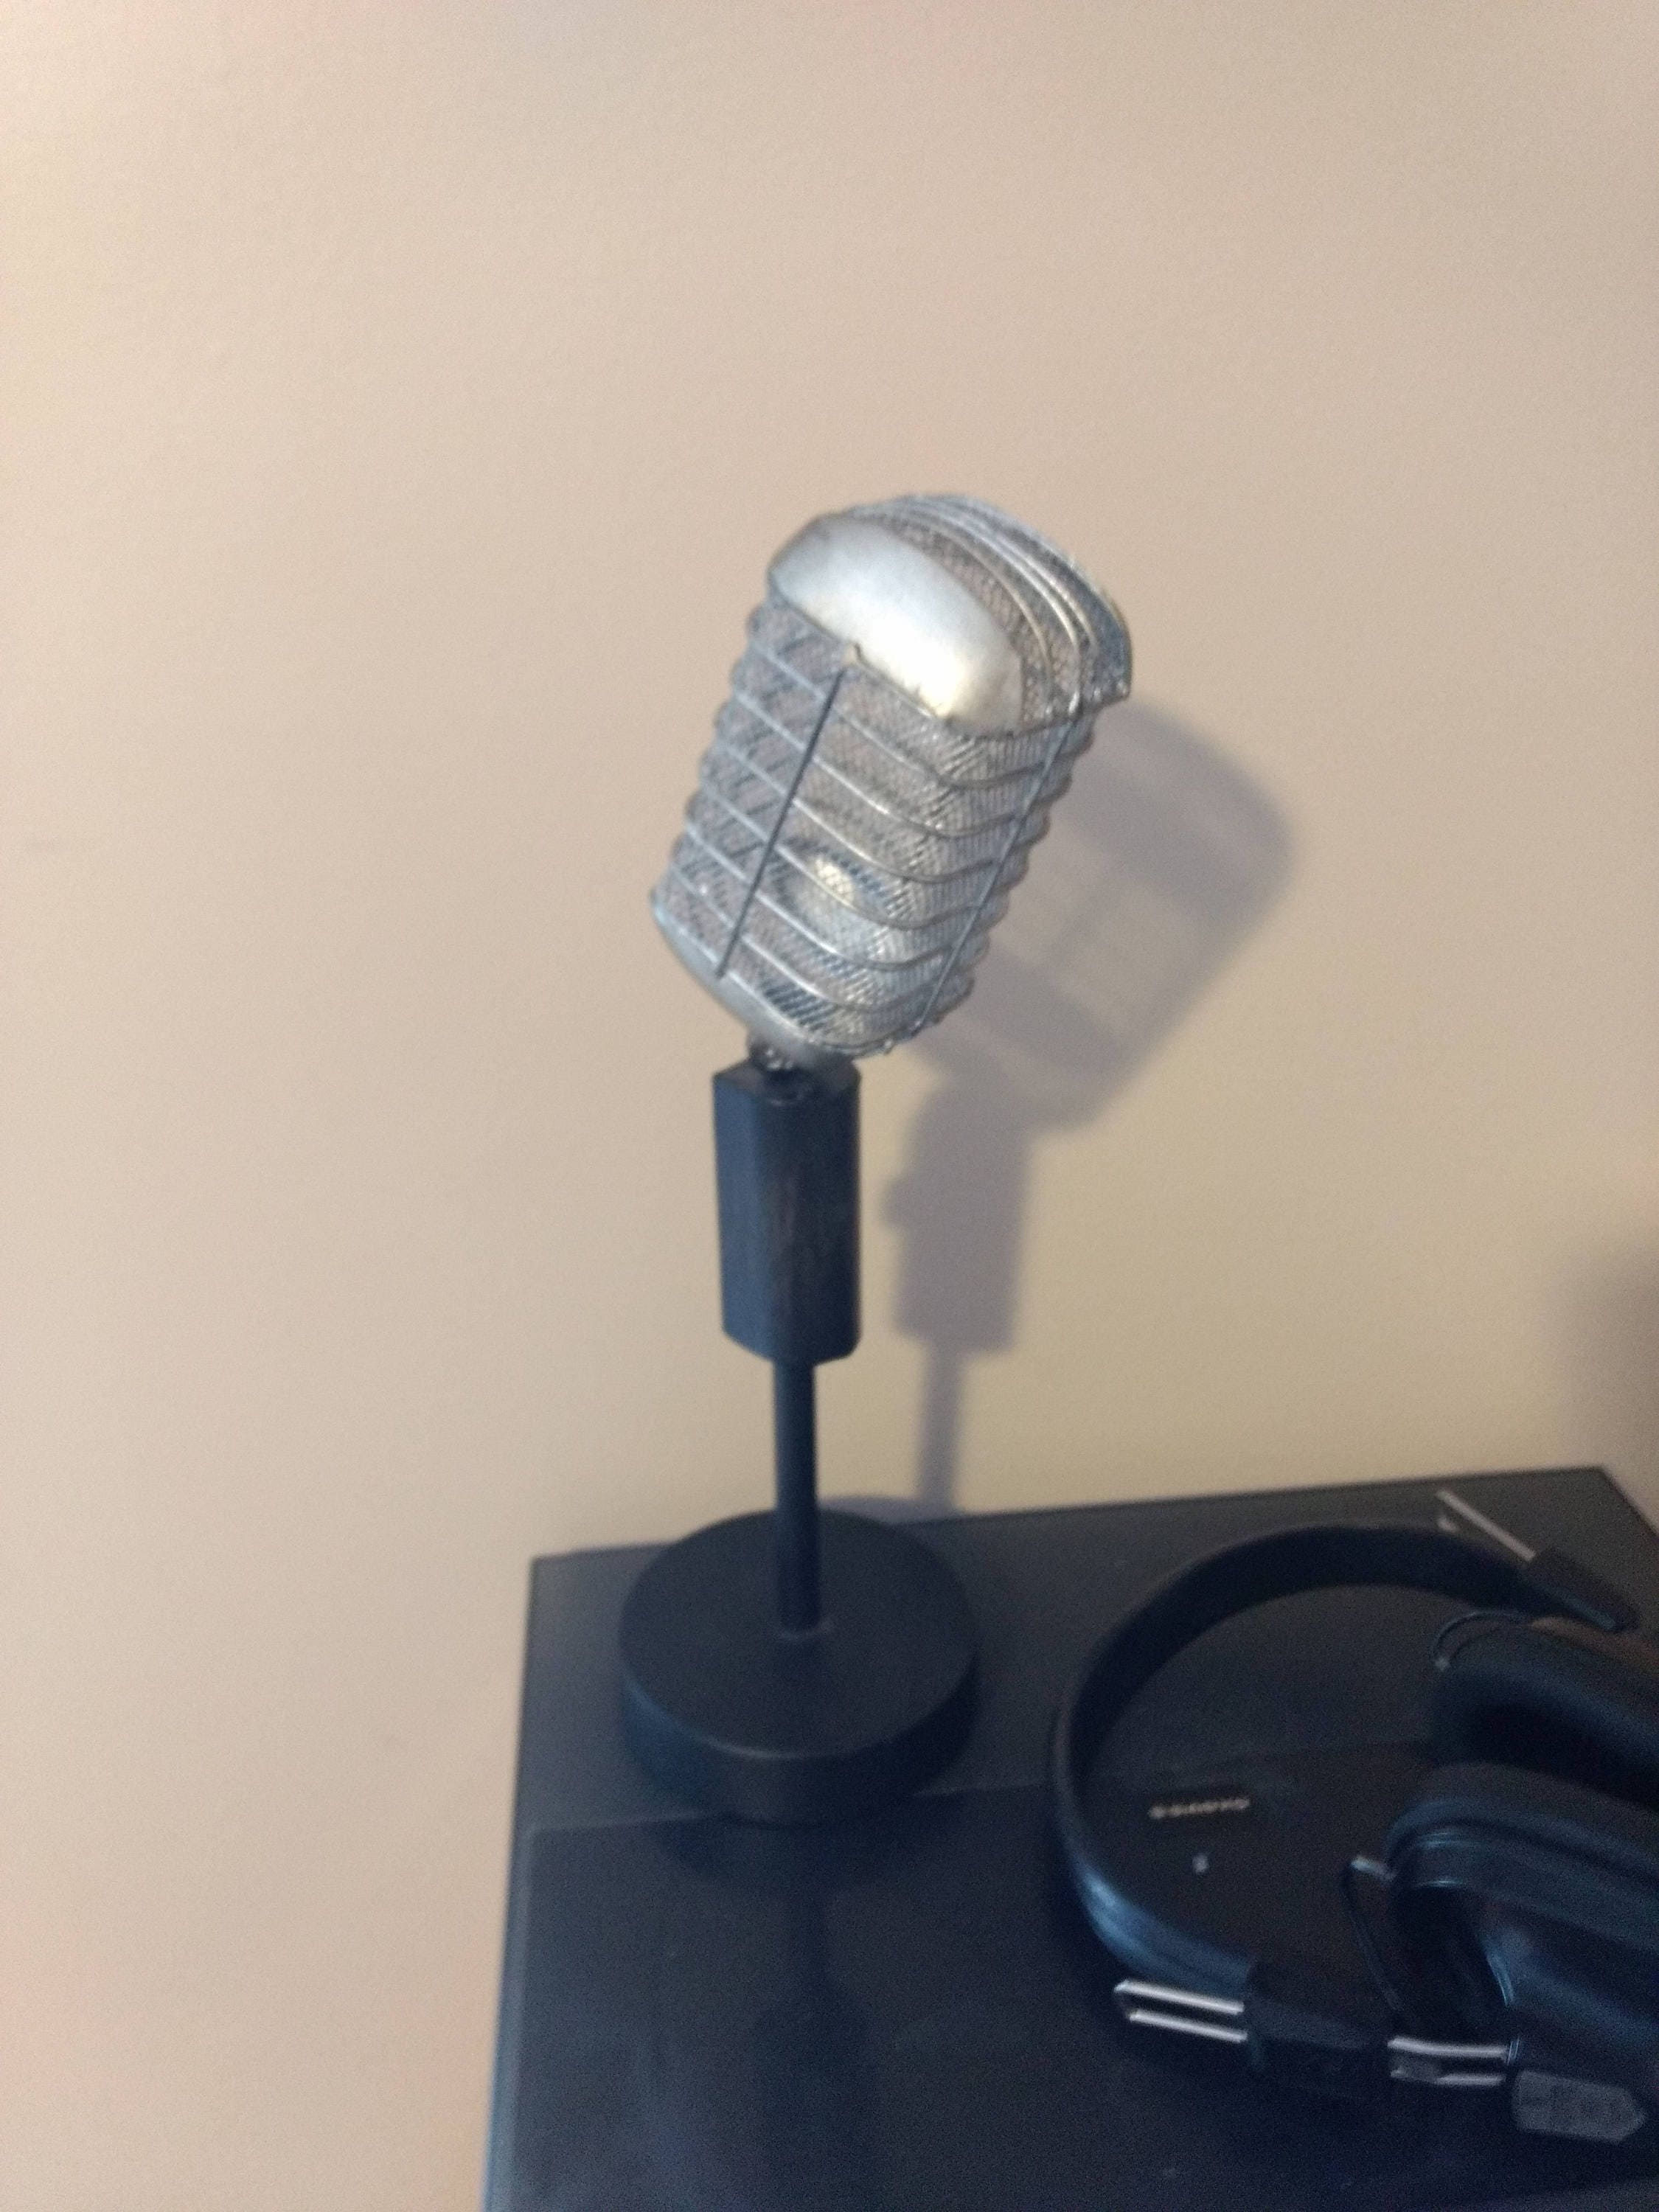 information on turner amateur hl6 microphone